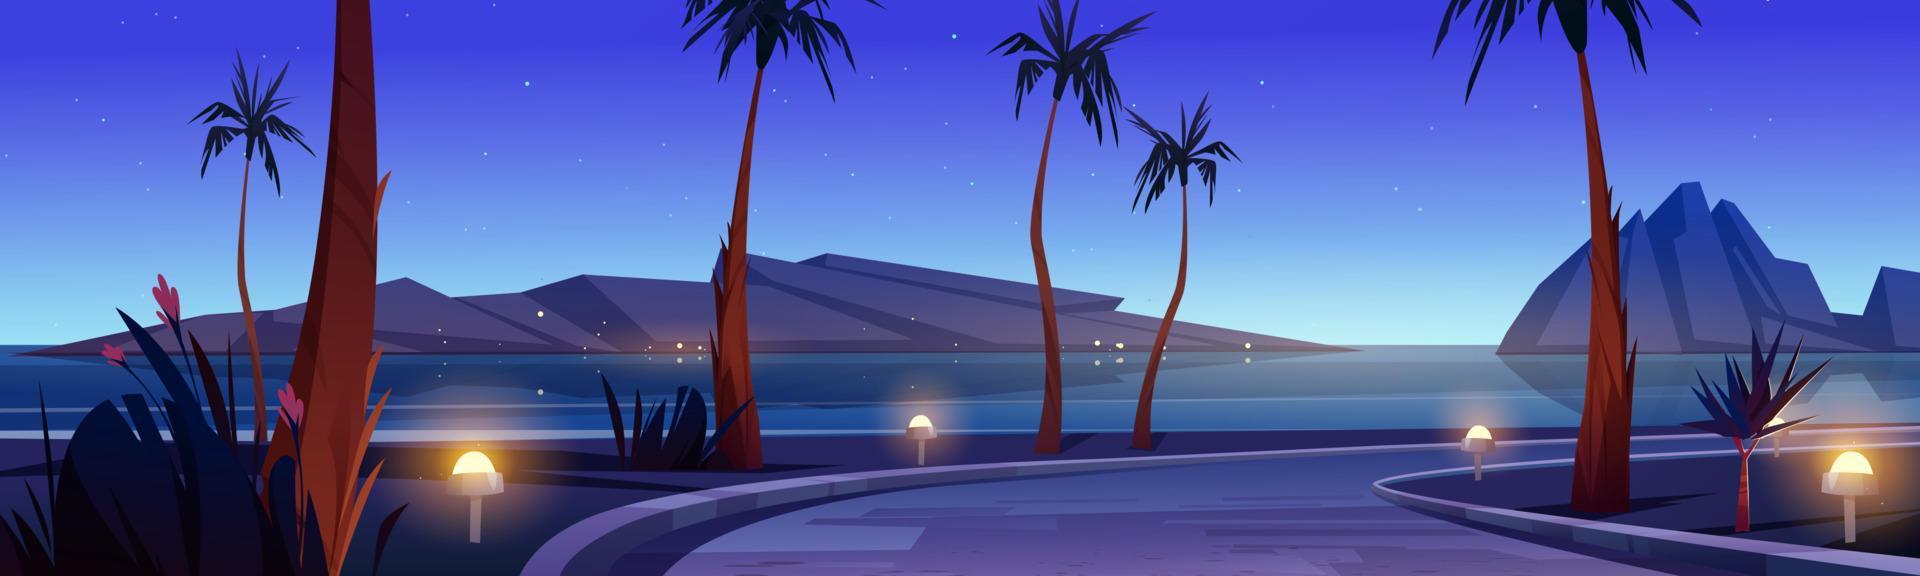 camino en la playa del mar con palmeras en la noche vector